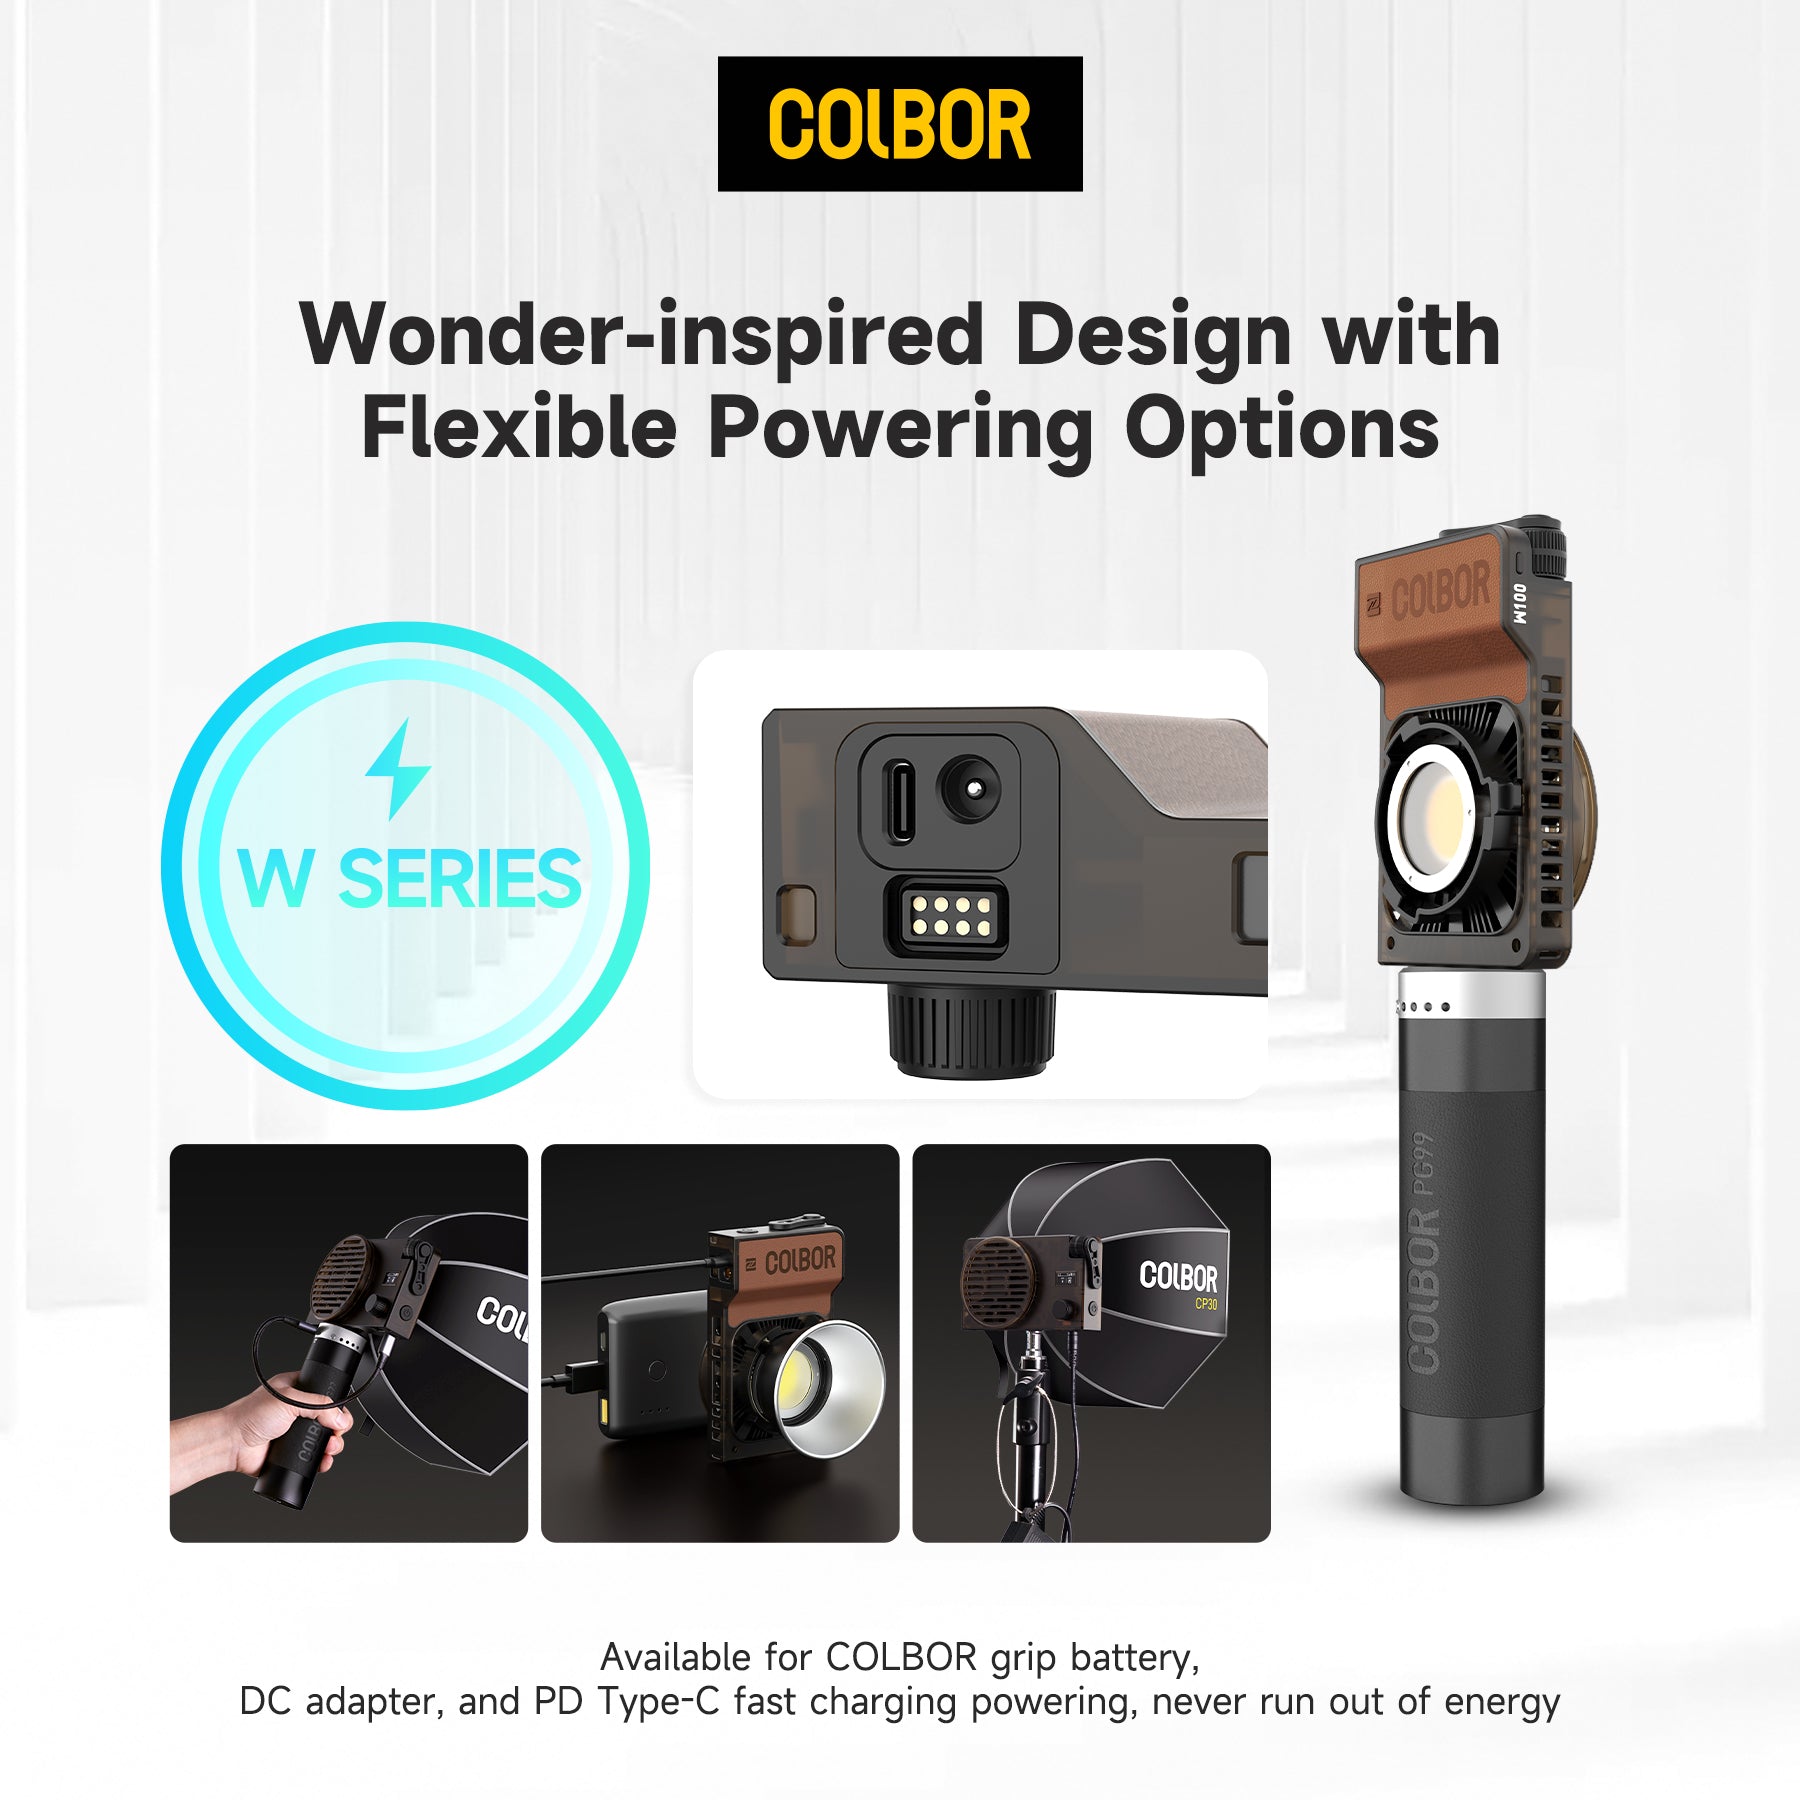 Colbor W100 Luz de vídeo LED portátil para fotografía Vídeo YouTube TikTok Disparos al aire libre